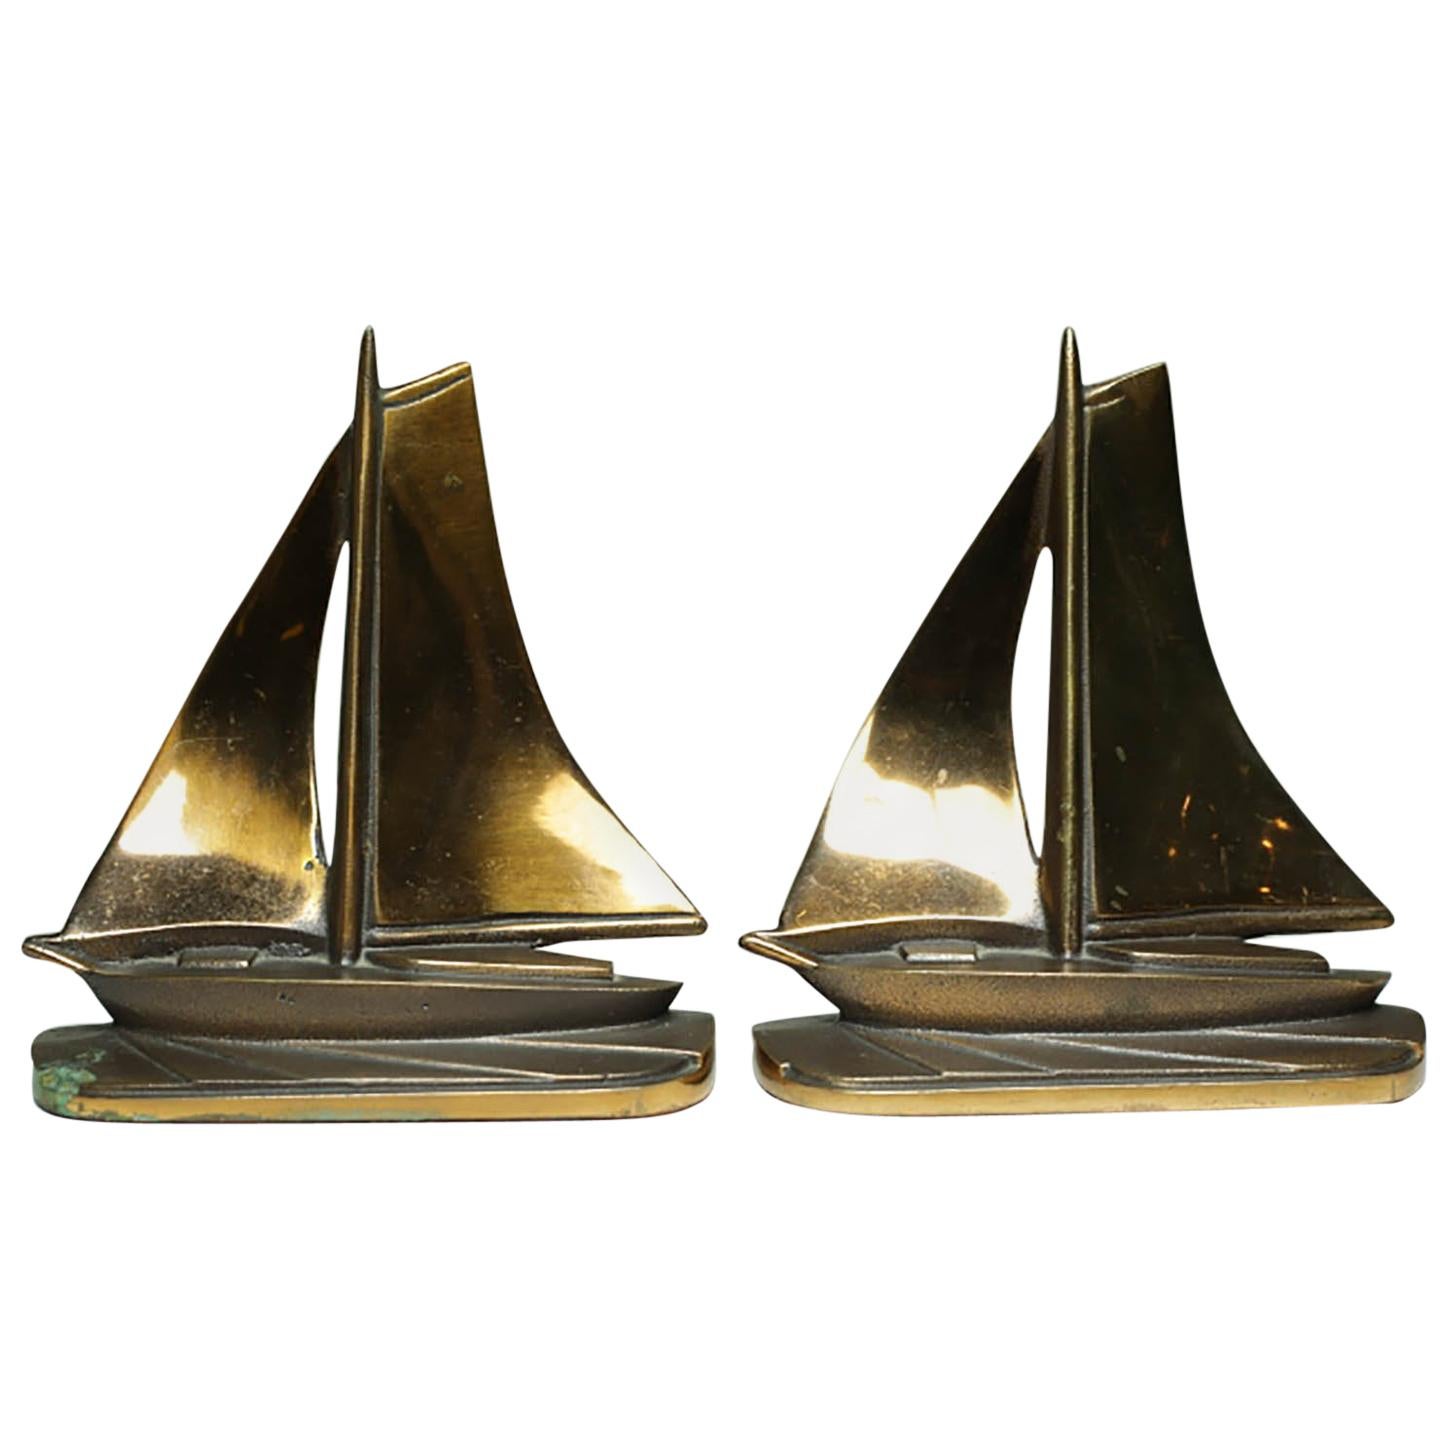 Solid Copper and Bronze Art Deco Sailboat Bookends, circa 1930s-1940s